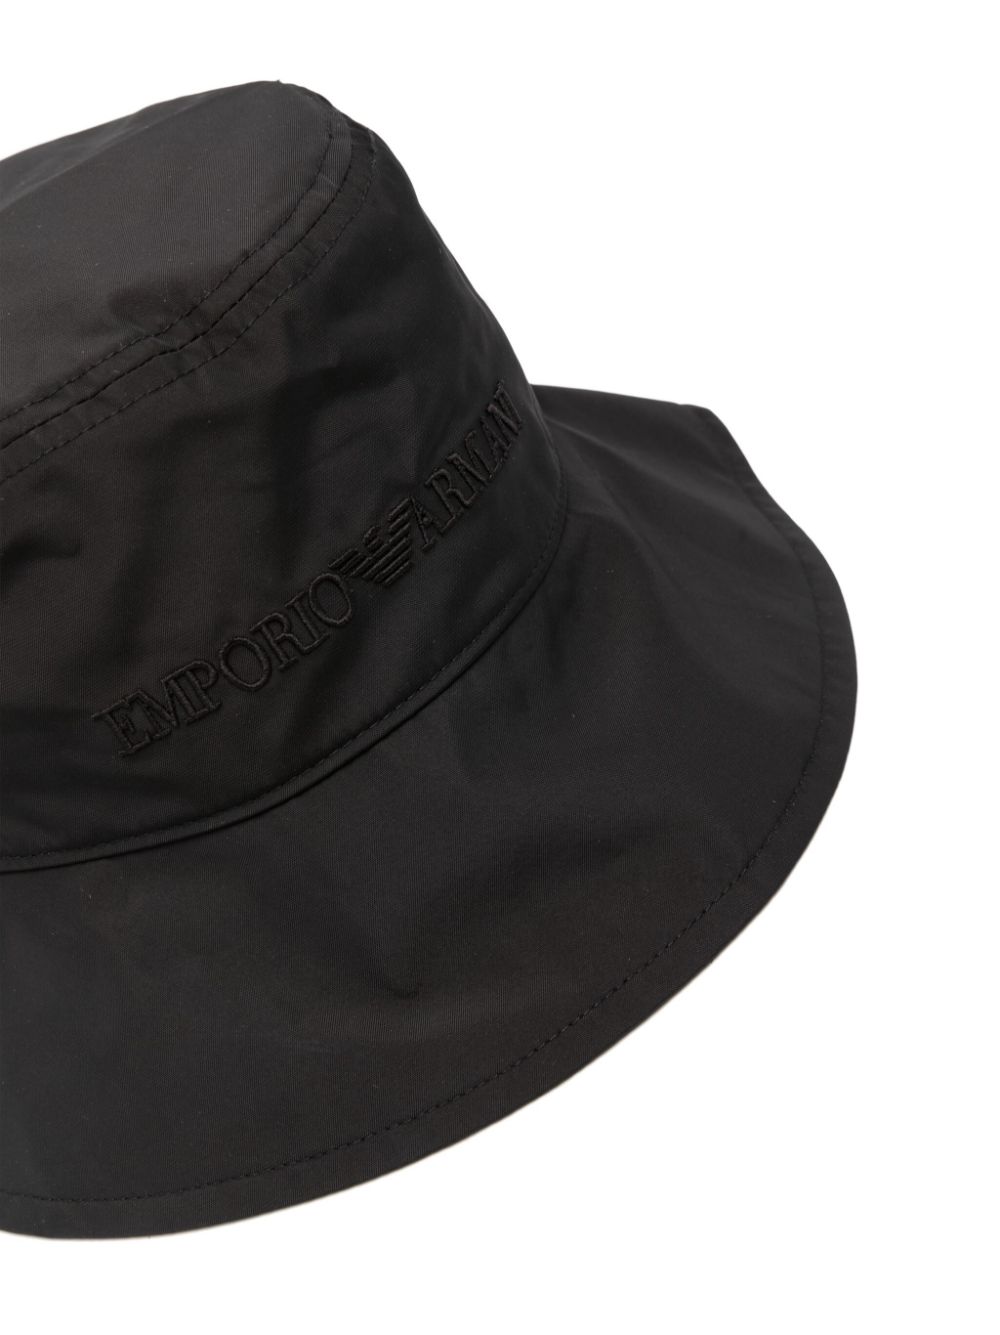 Emporio Armani Logo Bucket Hat Black